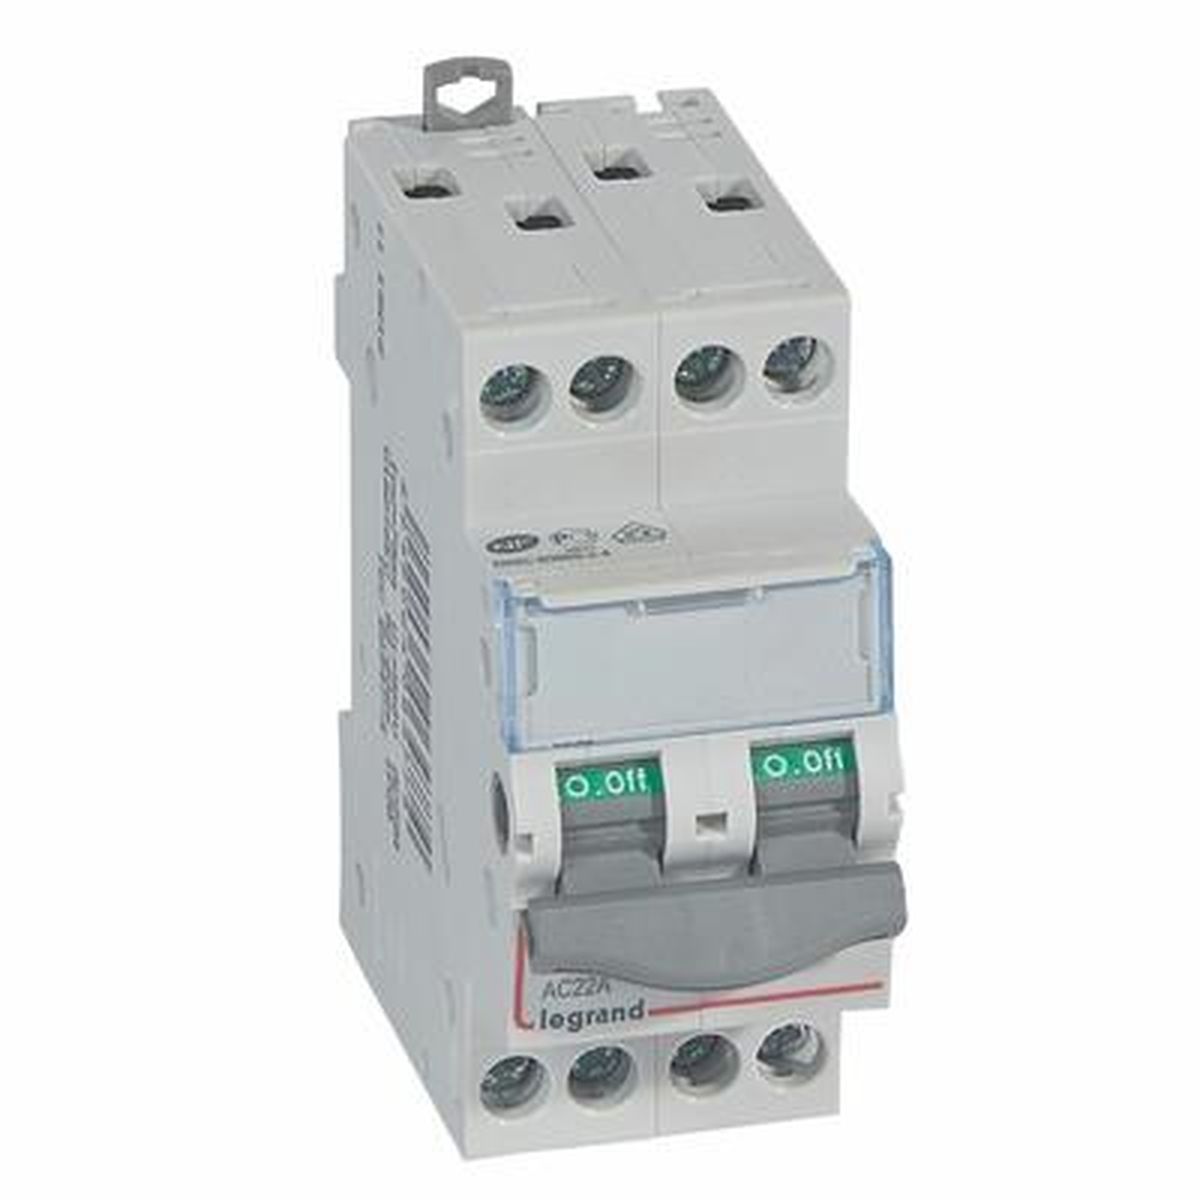 406477 - Interrupteur-sectionneur DX³-IS - 4P 400 V~ - 20 A - 2 modules - Réf : 406477 - Legrand - 0